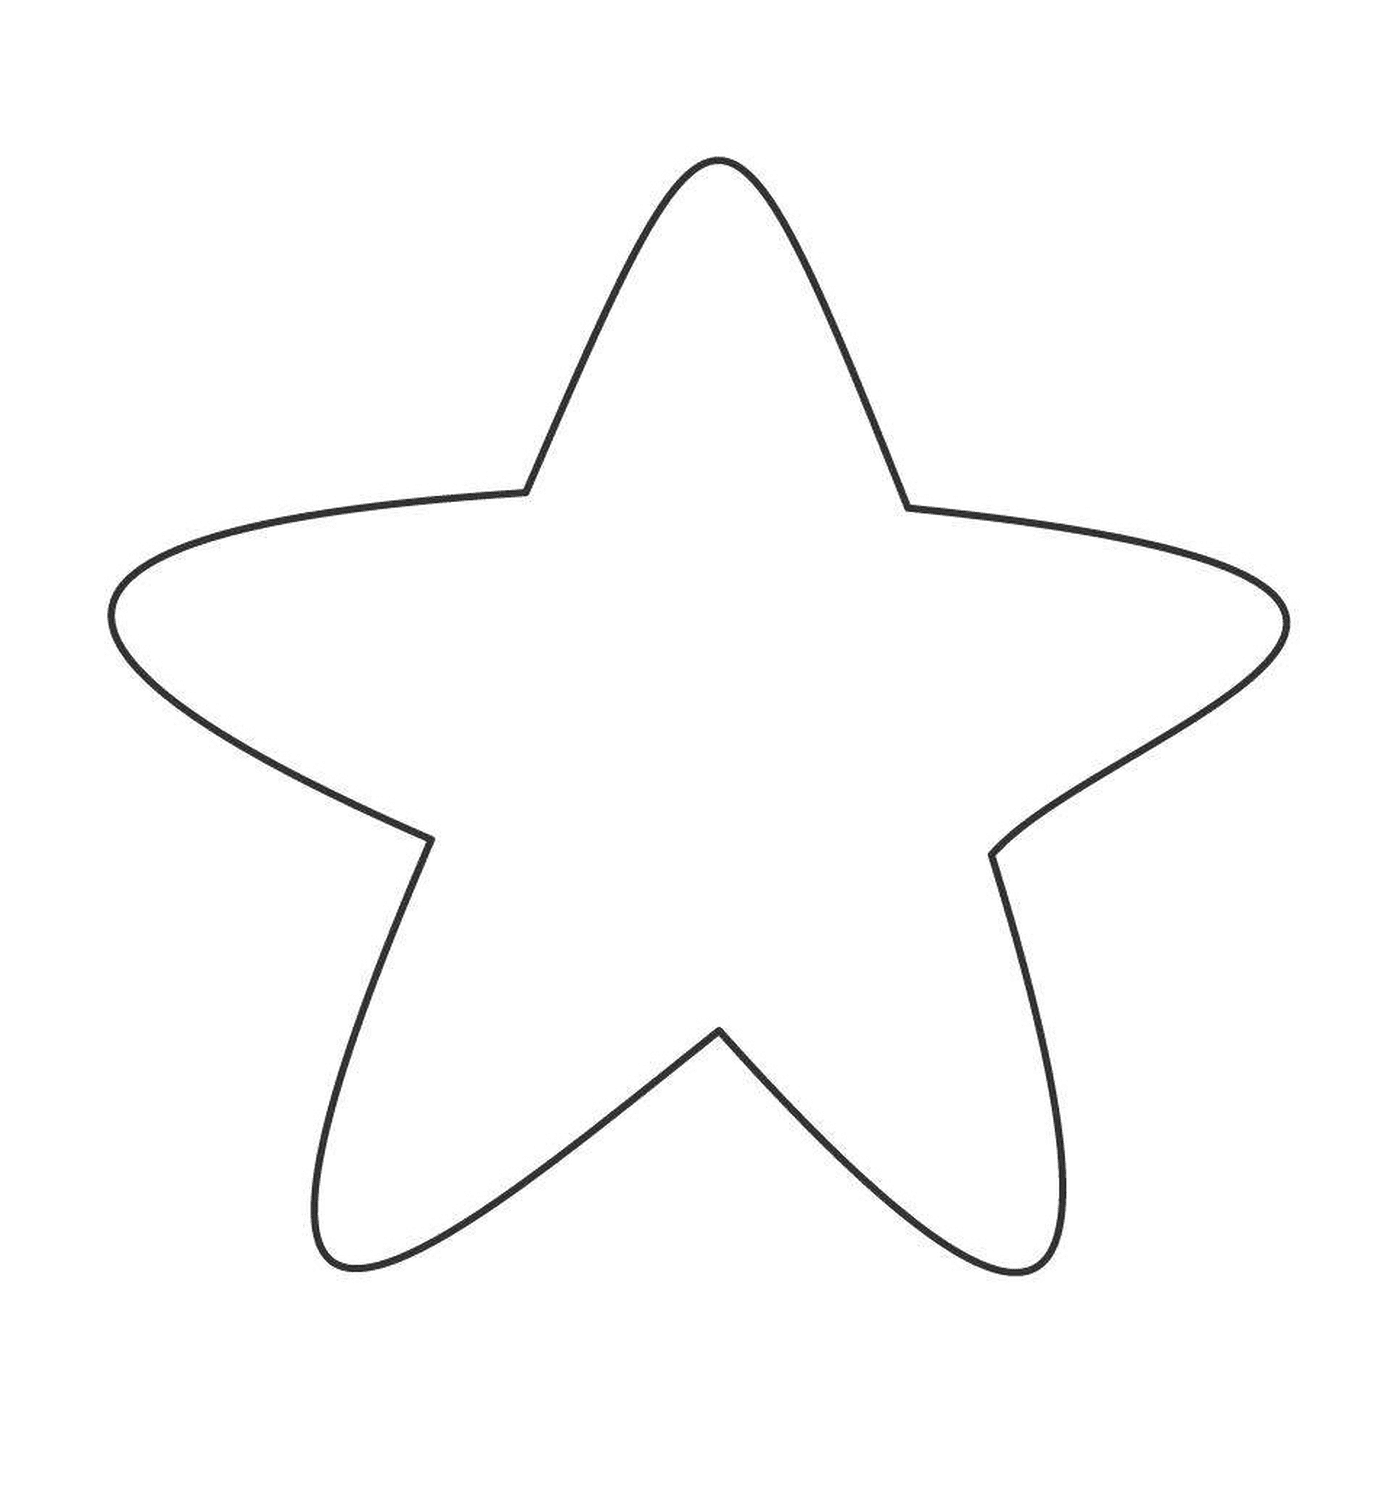  Una stella arrotondata 